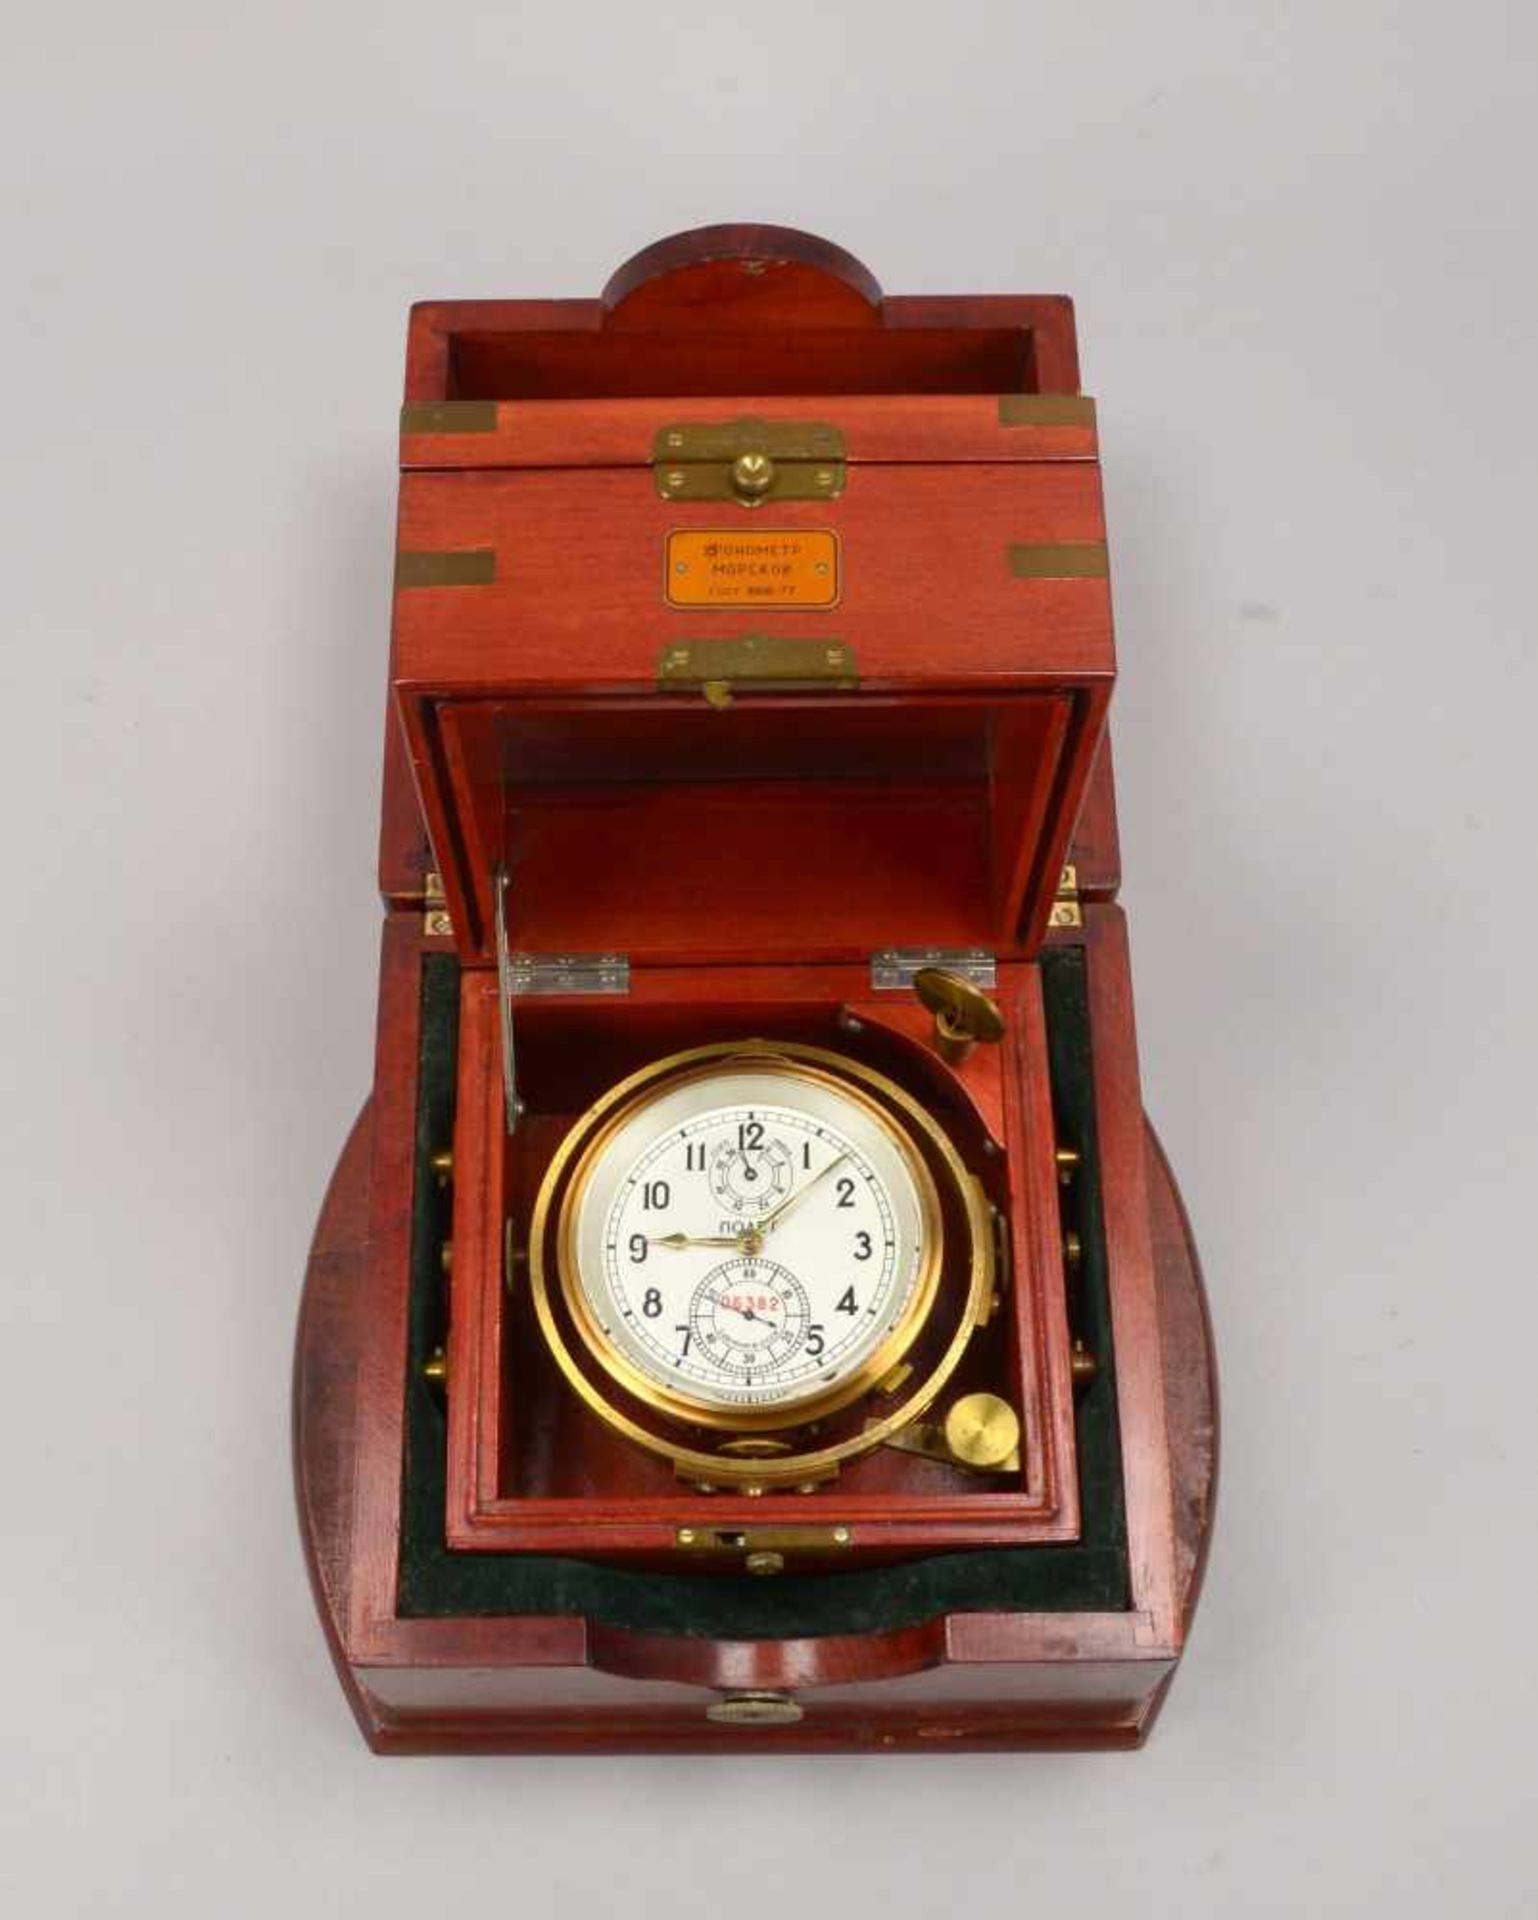 Marine-Chronometer (Russland), Gang-Nr. '06382', Ziffernblatt mit arabischen Ziffern, goldfarbene